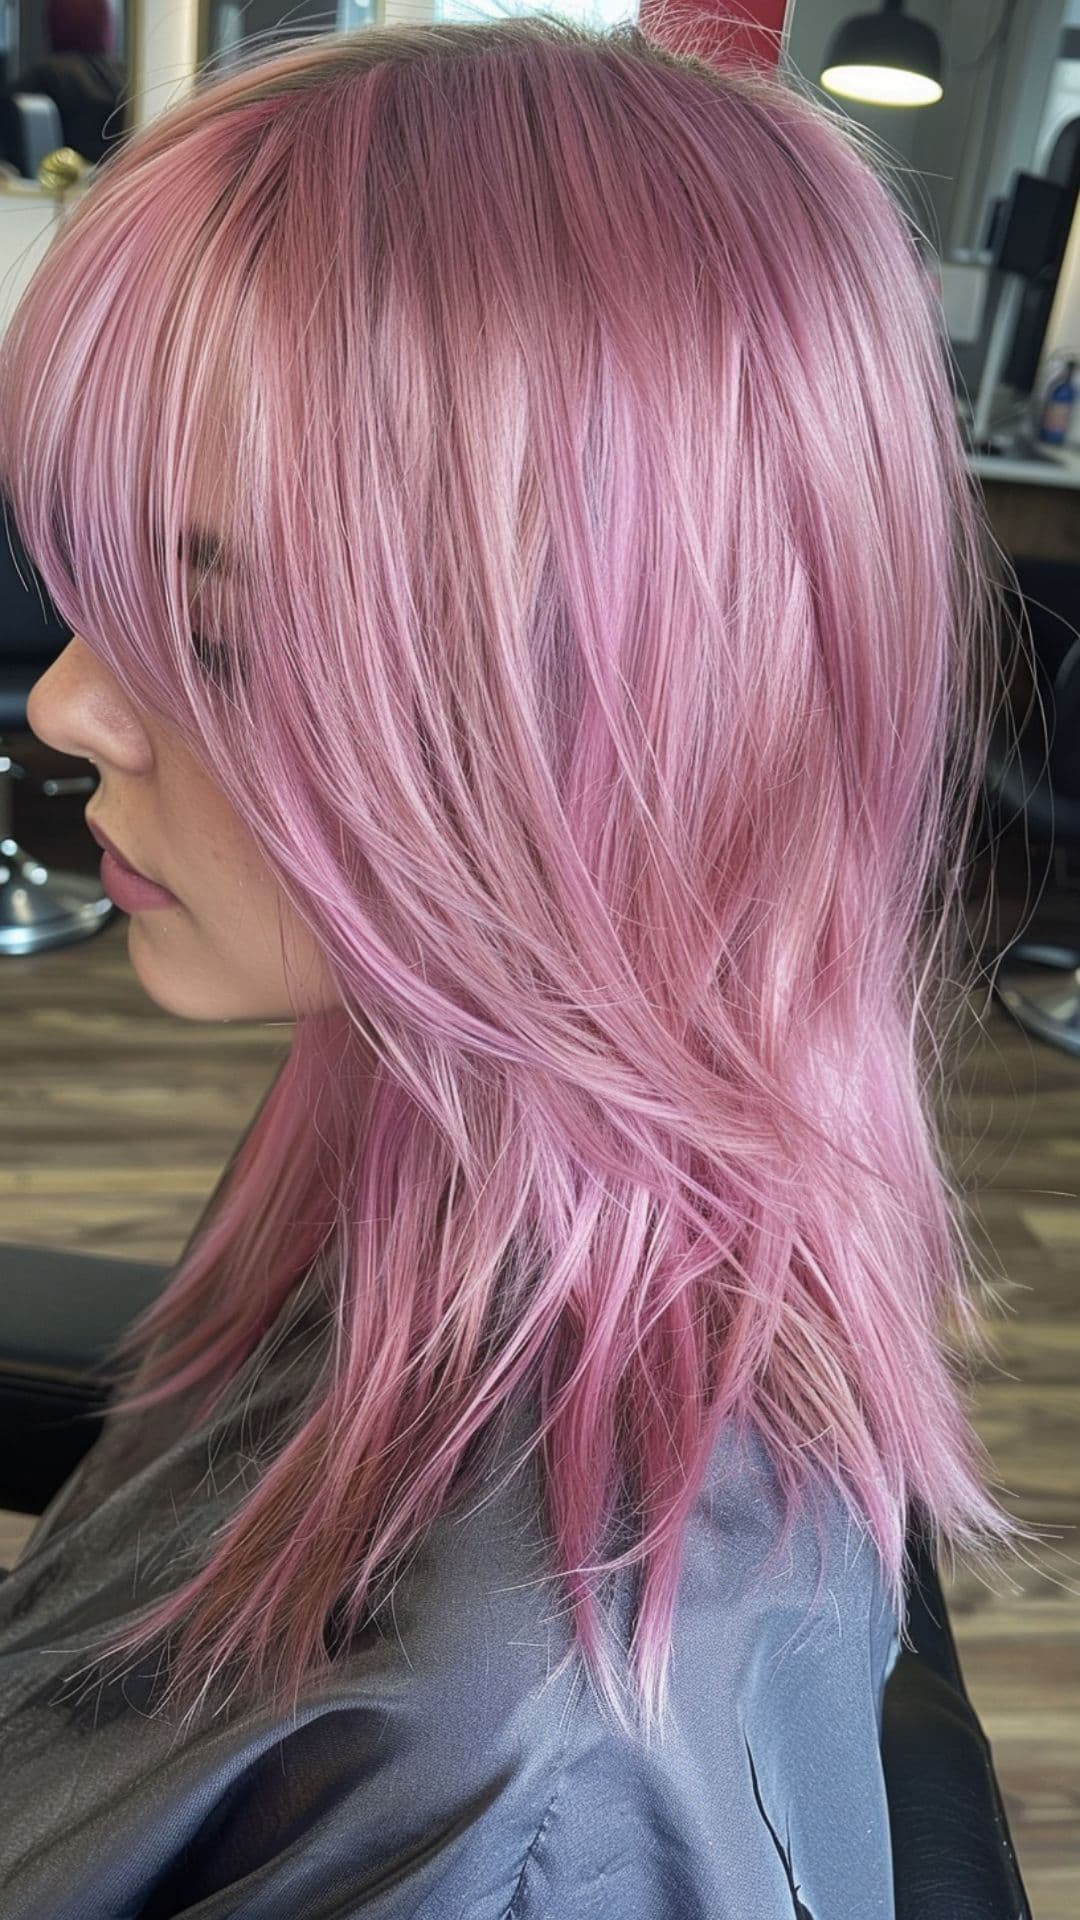 A woman modelling a metallic pink shine hair.